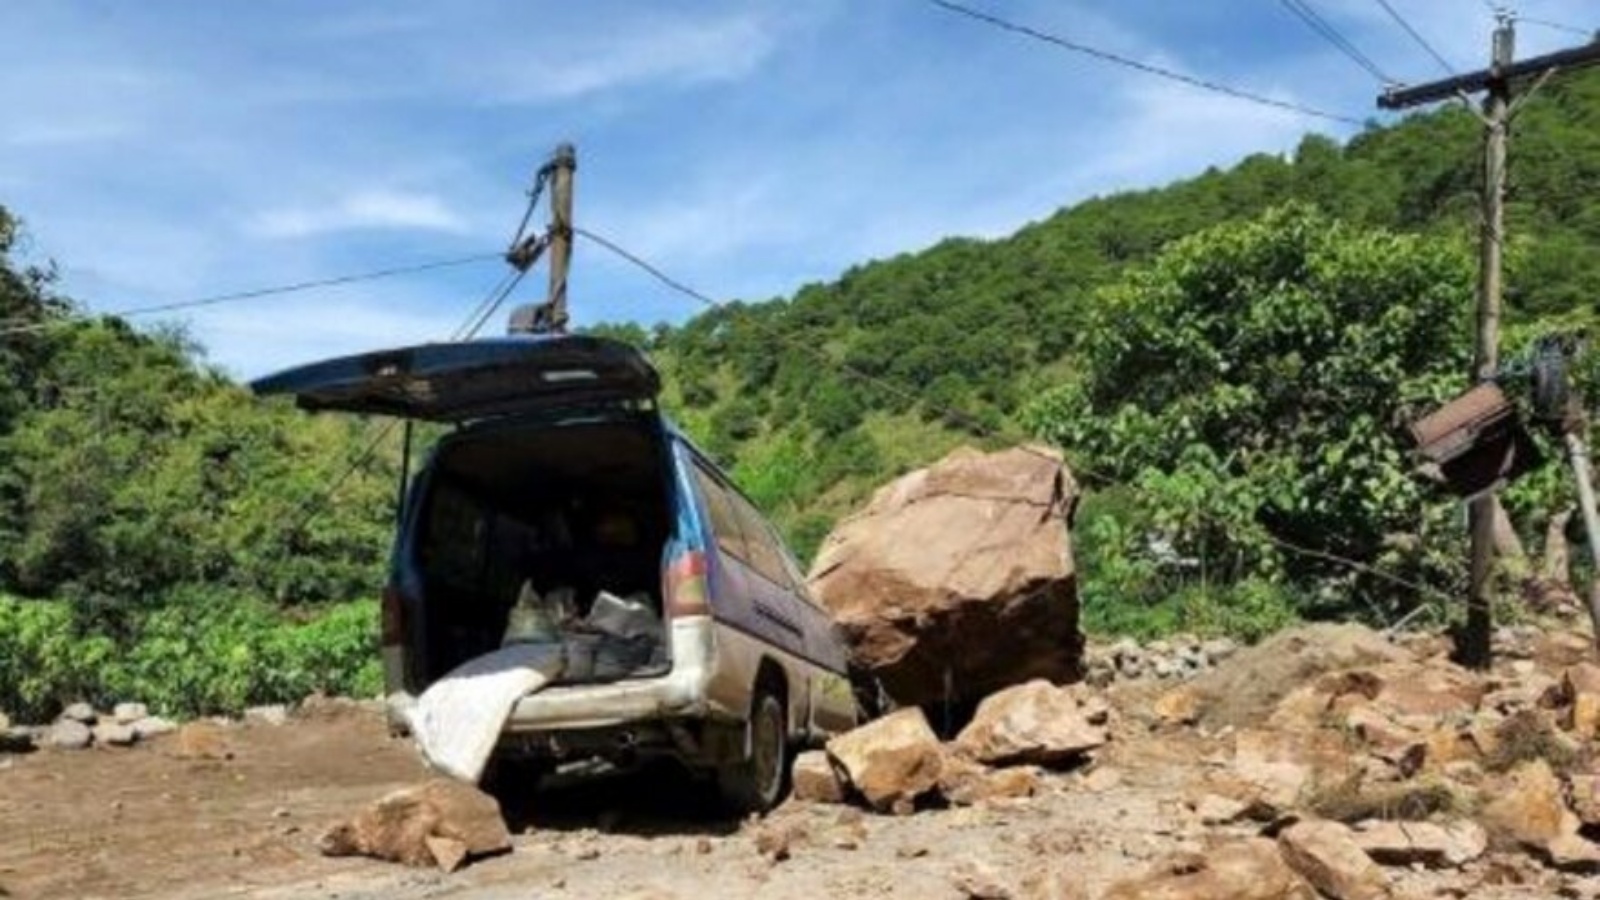 آلية متضررة بسبب انهيار صخور نجم عن زلزال في بونتوك بشمال الفيليبين في 27 يوليو 2022 